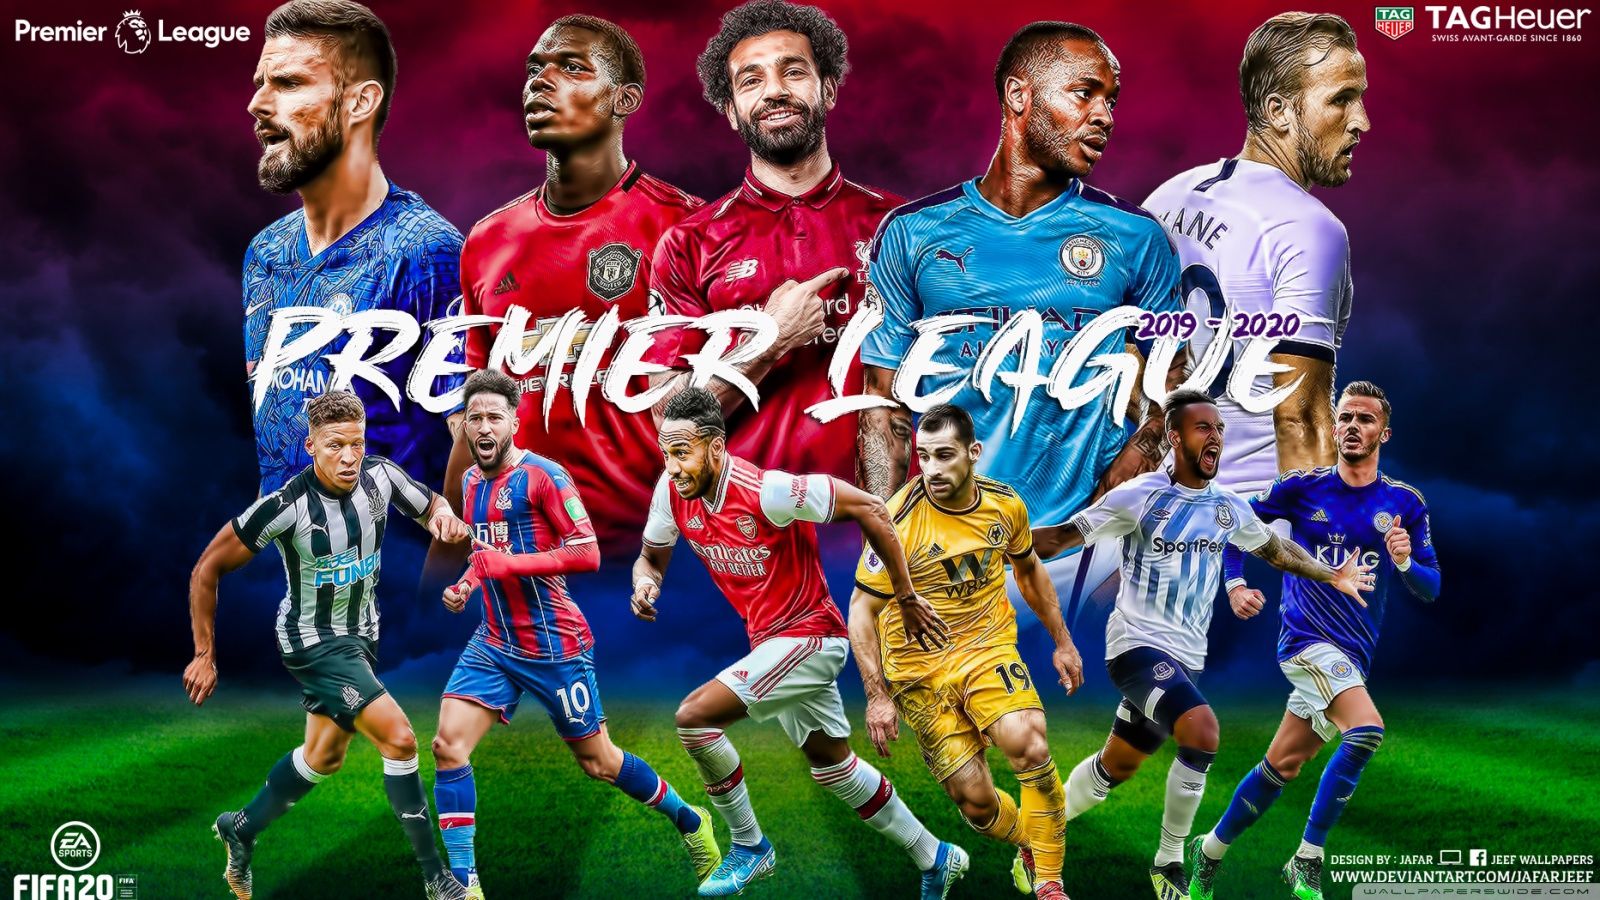 premier-league-wallpapers-4k-hd-premier-league-backgrounds-on